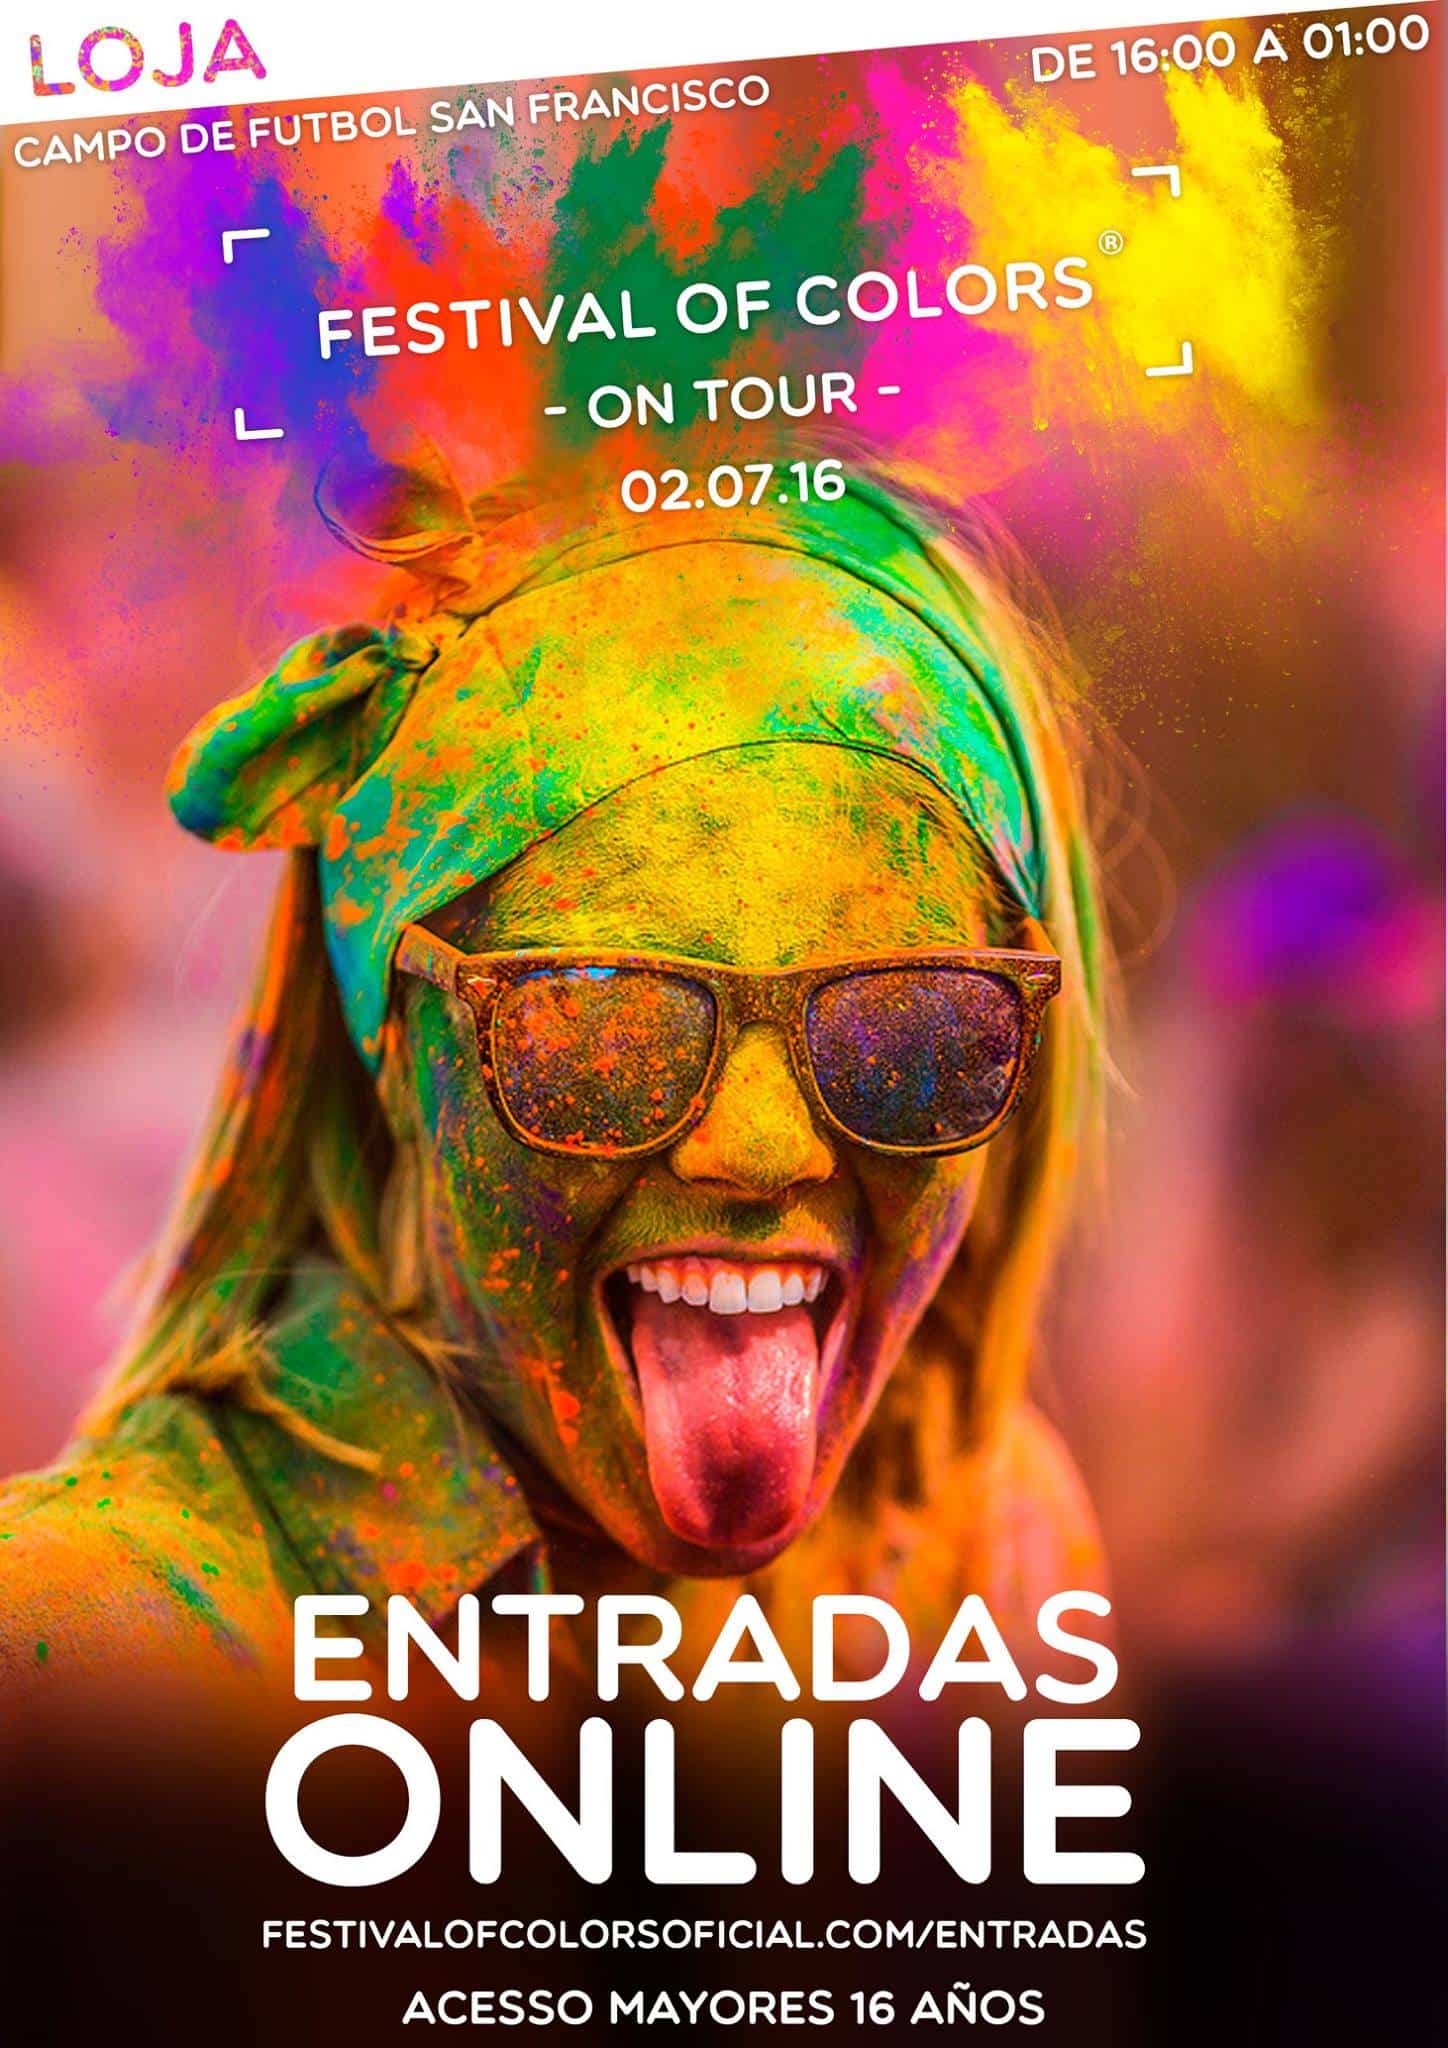 Cartel Anunciador De La Fiesta De Los Colores Que Se Celebrará En Loja A Primeros De Julio.